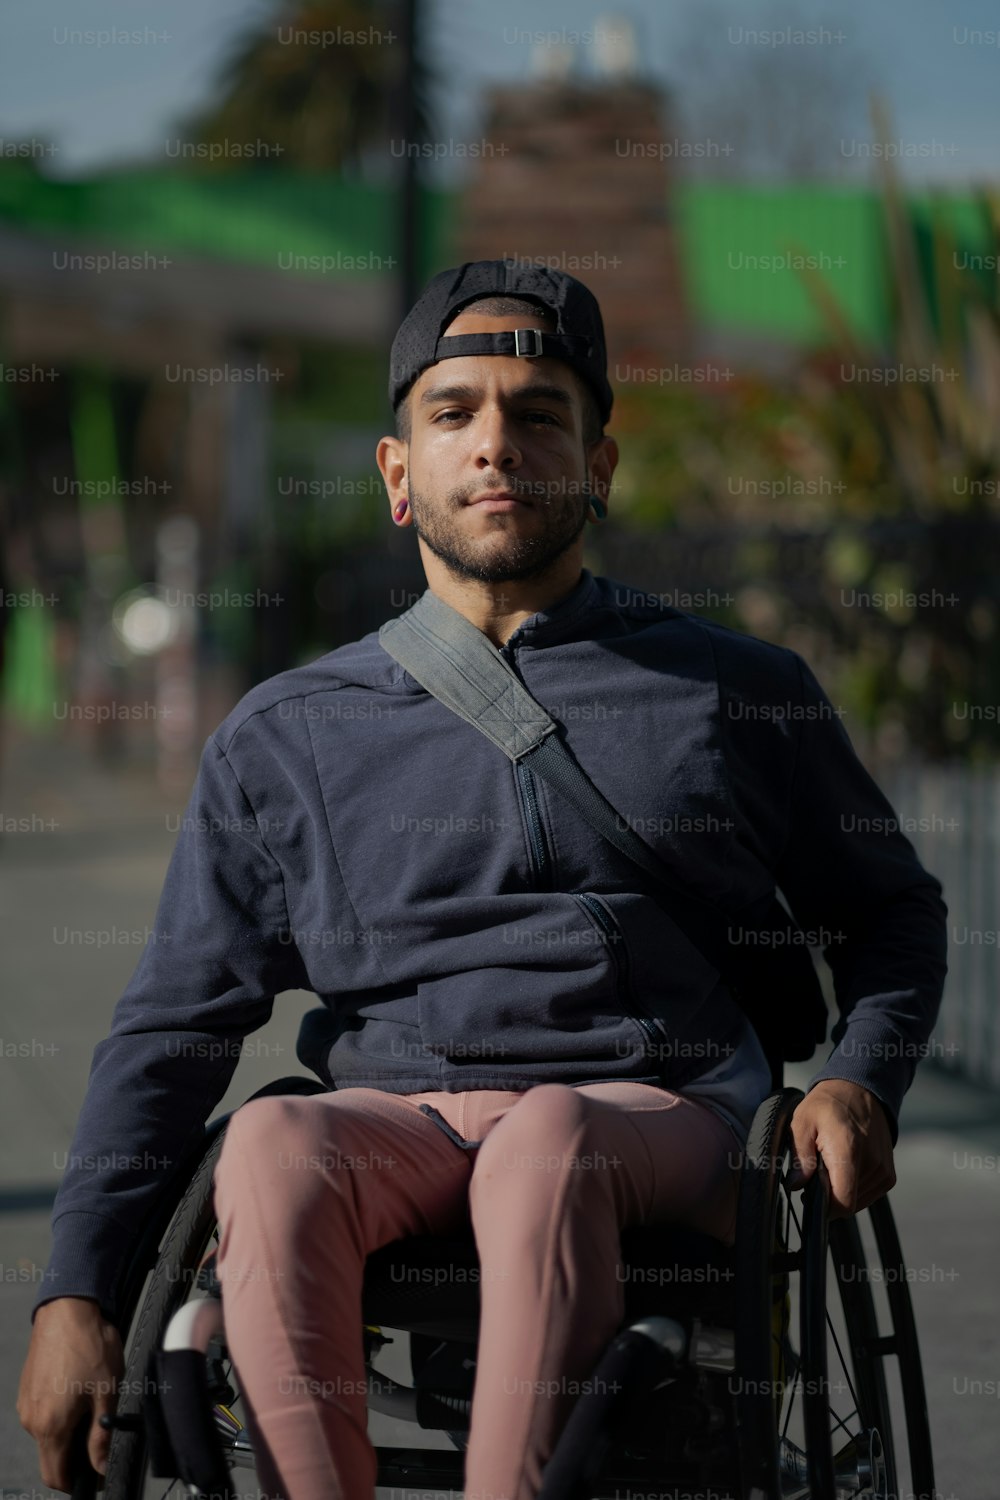 a man sitting in a wheel chair on a sidewalk